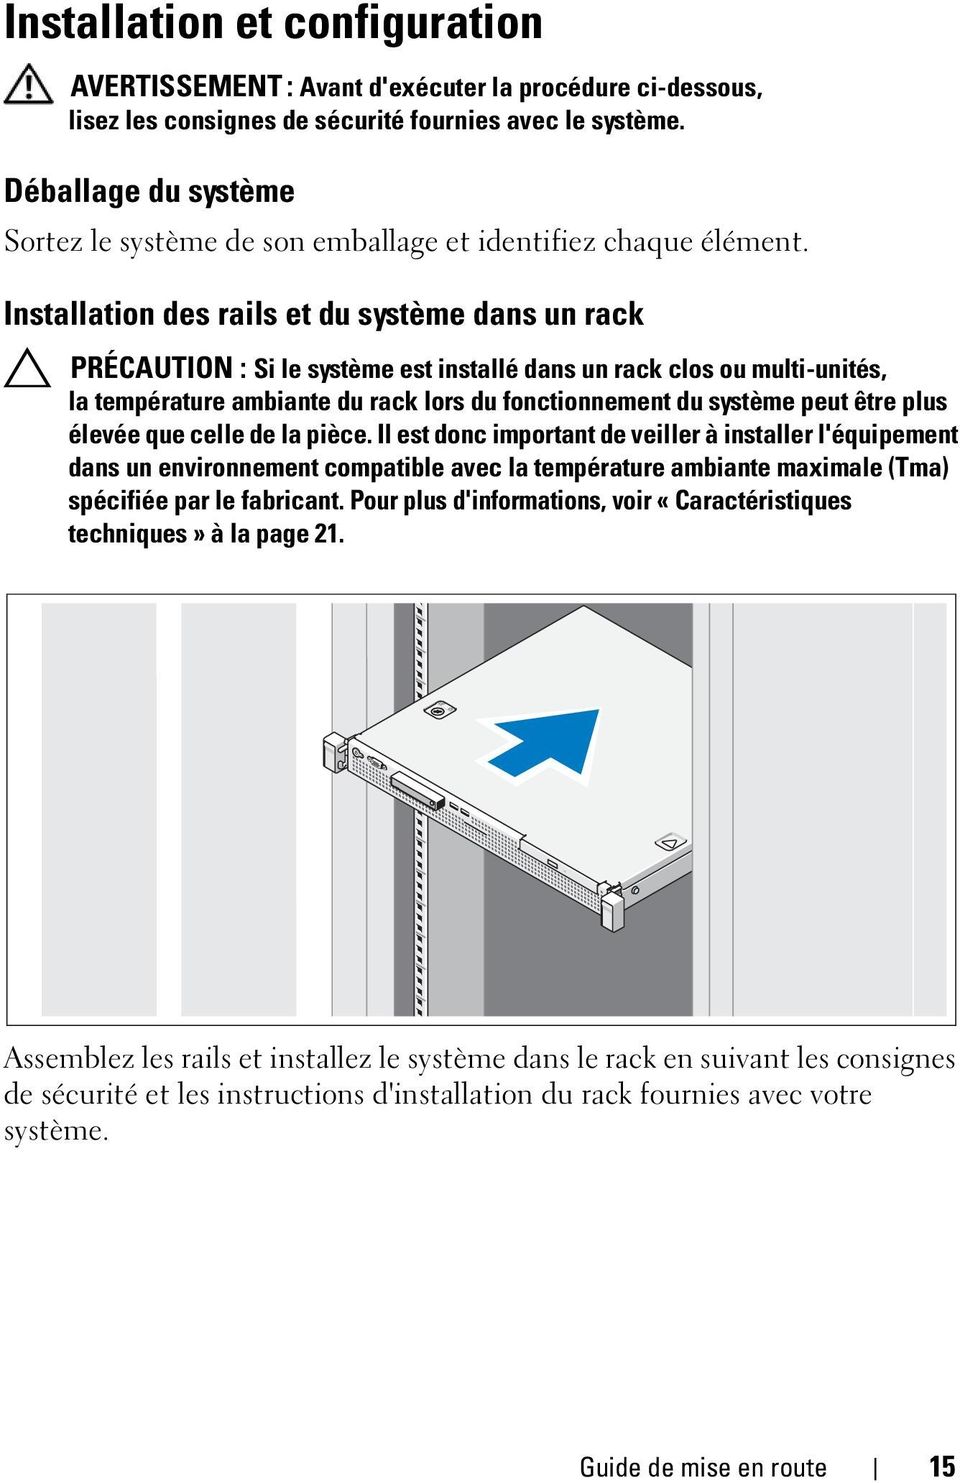 Installation des rails et du système dans un rack PRÉCAUTION : Si le système est installé dans un rack clos ou multi-unités, la température ambiante du rack lors du fonctionnement du système peut